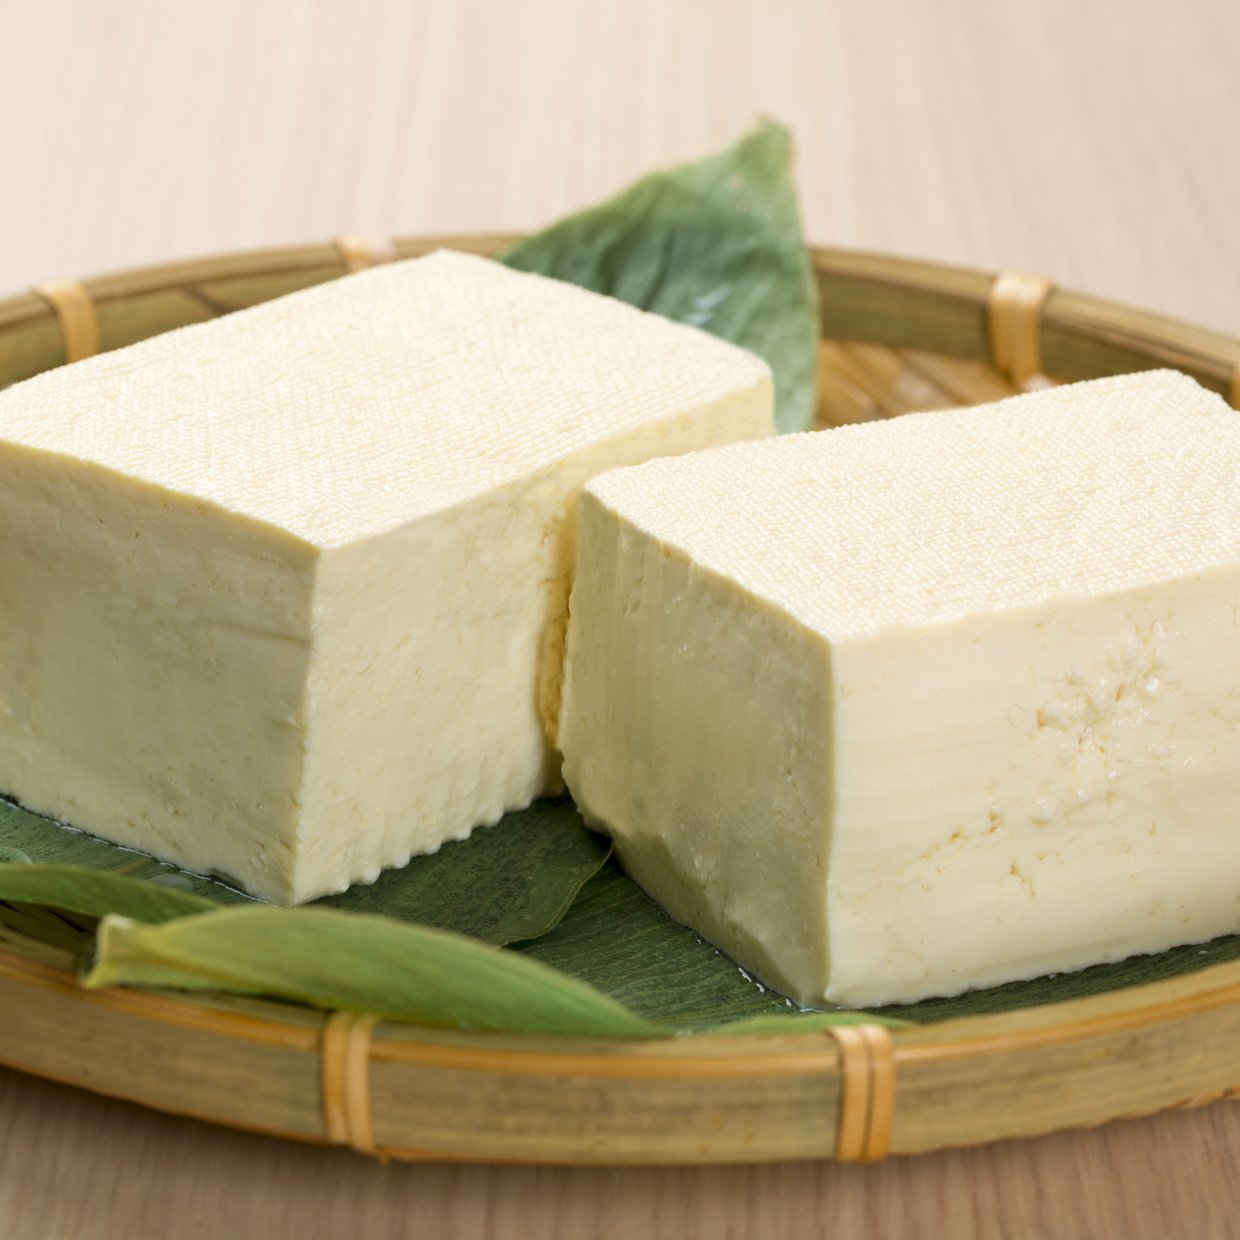  「豆腐の水切り」は”容器に入れたまま”が正解！簡単に手間なくできる水切りの仕方 